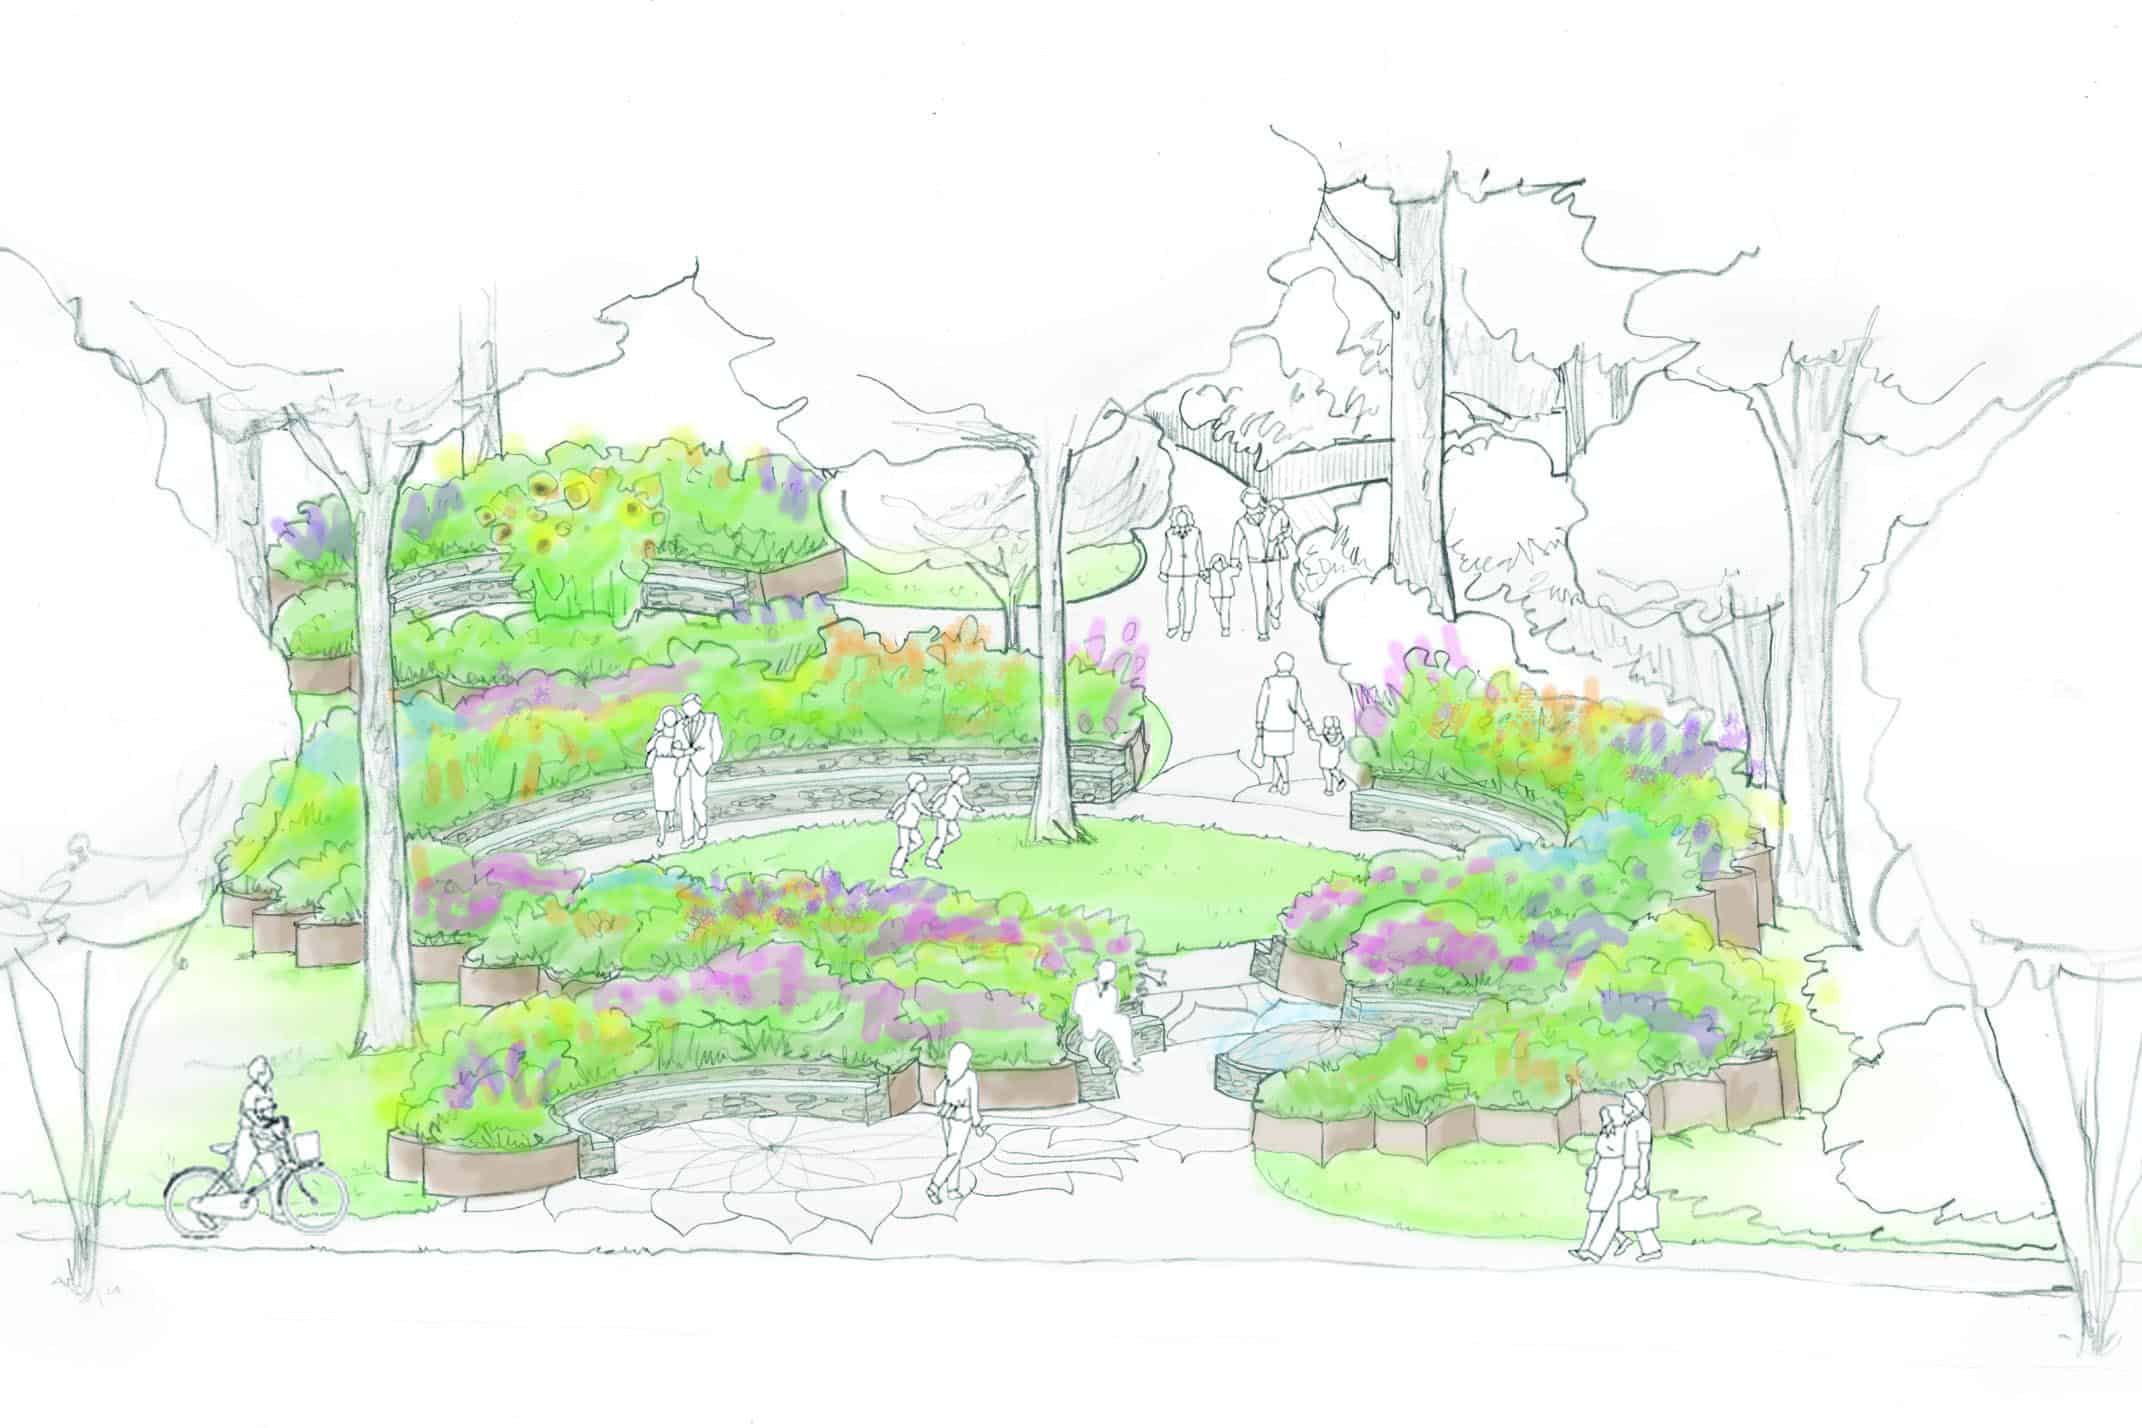 Landscape Design for a Greenville, SC, Public Park: Part Two